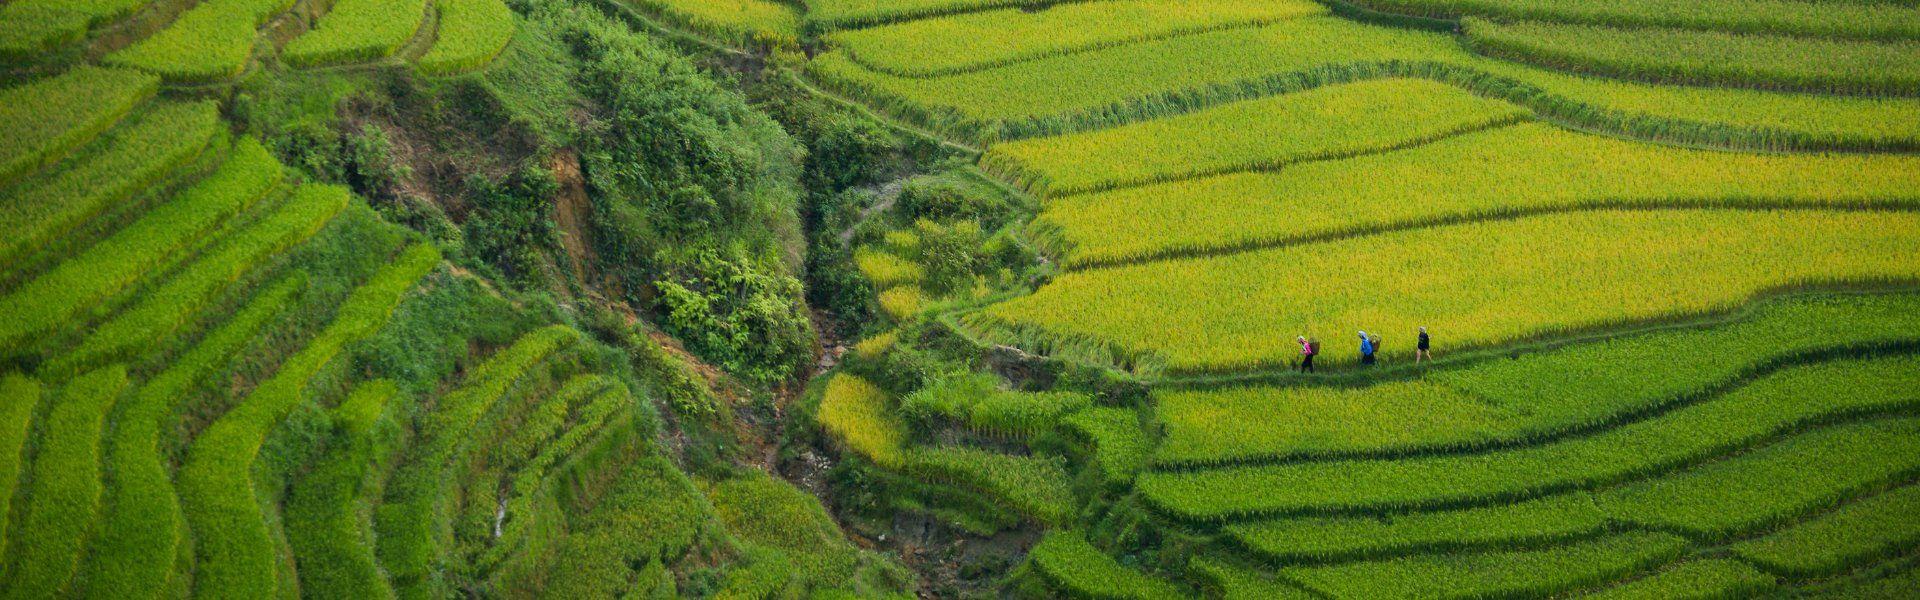 Visite des rizières du Vietnam